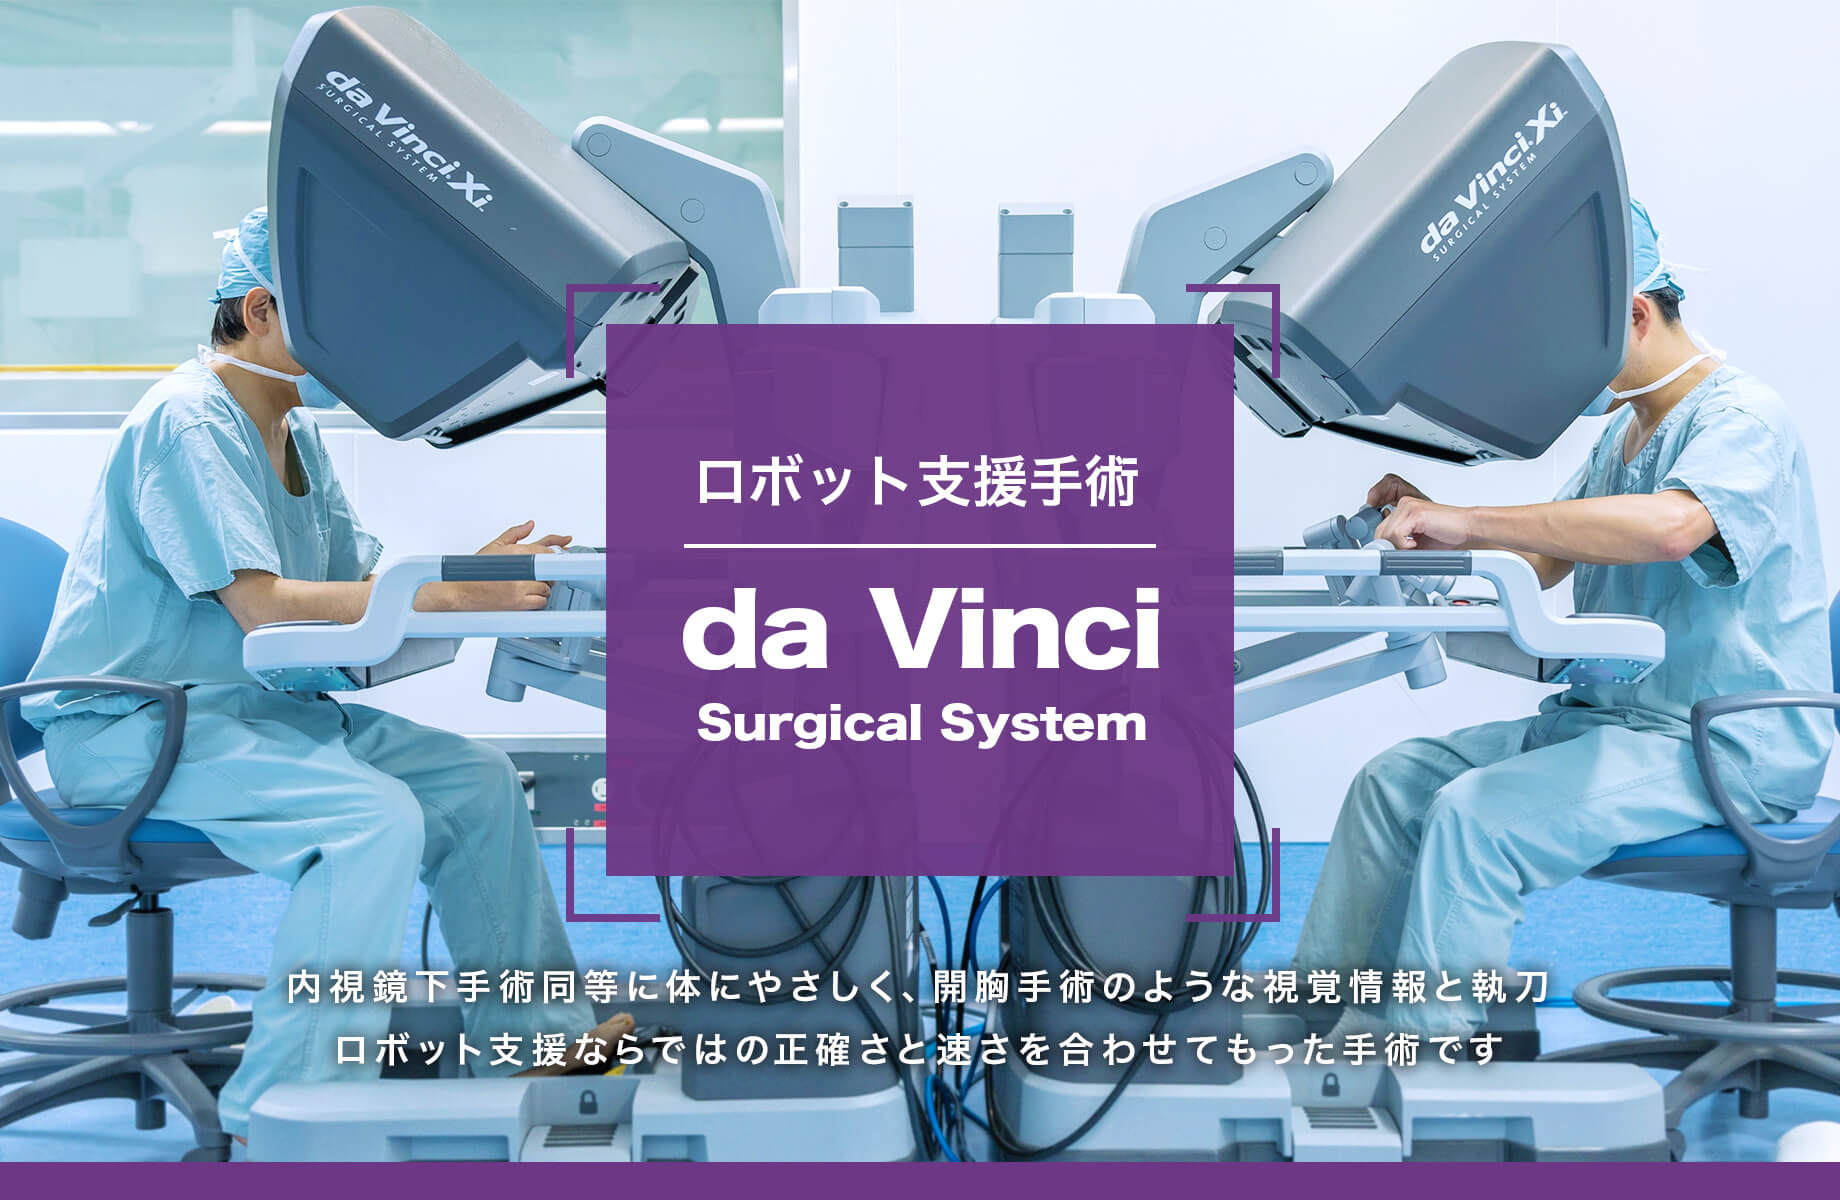 手術支援ロボット ダビンチ 内視鏡下手術同等に体にやさしく、開腹手術のような視覚情報と執刀。ロボット支援ならではの正確さと速さを併せて持った手術です。